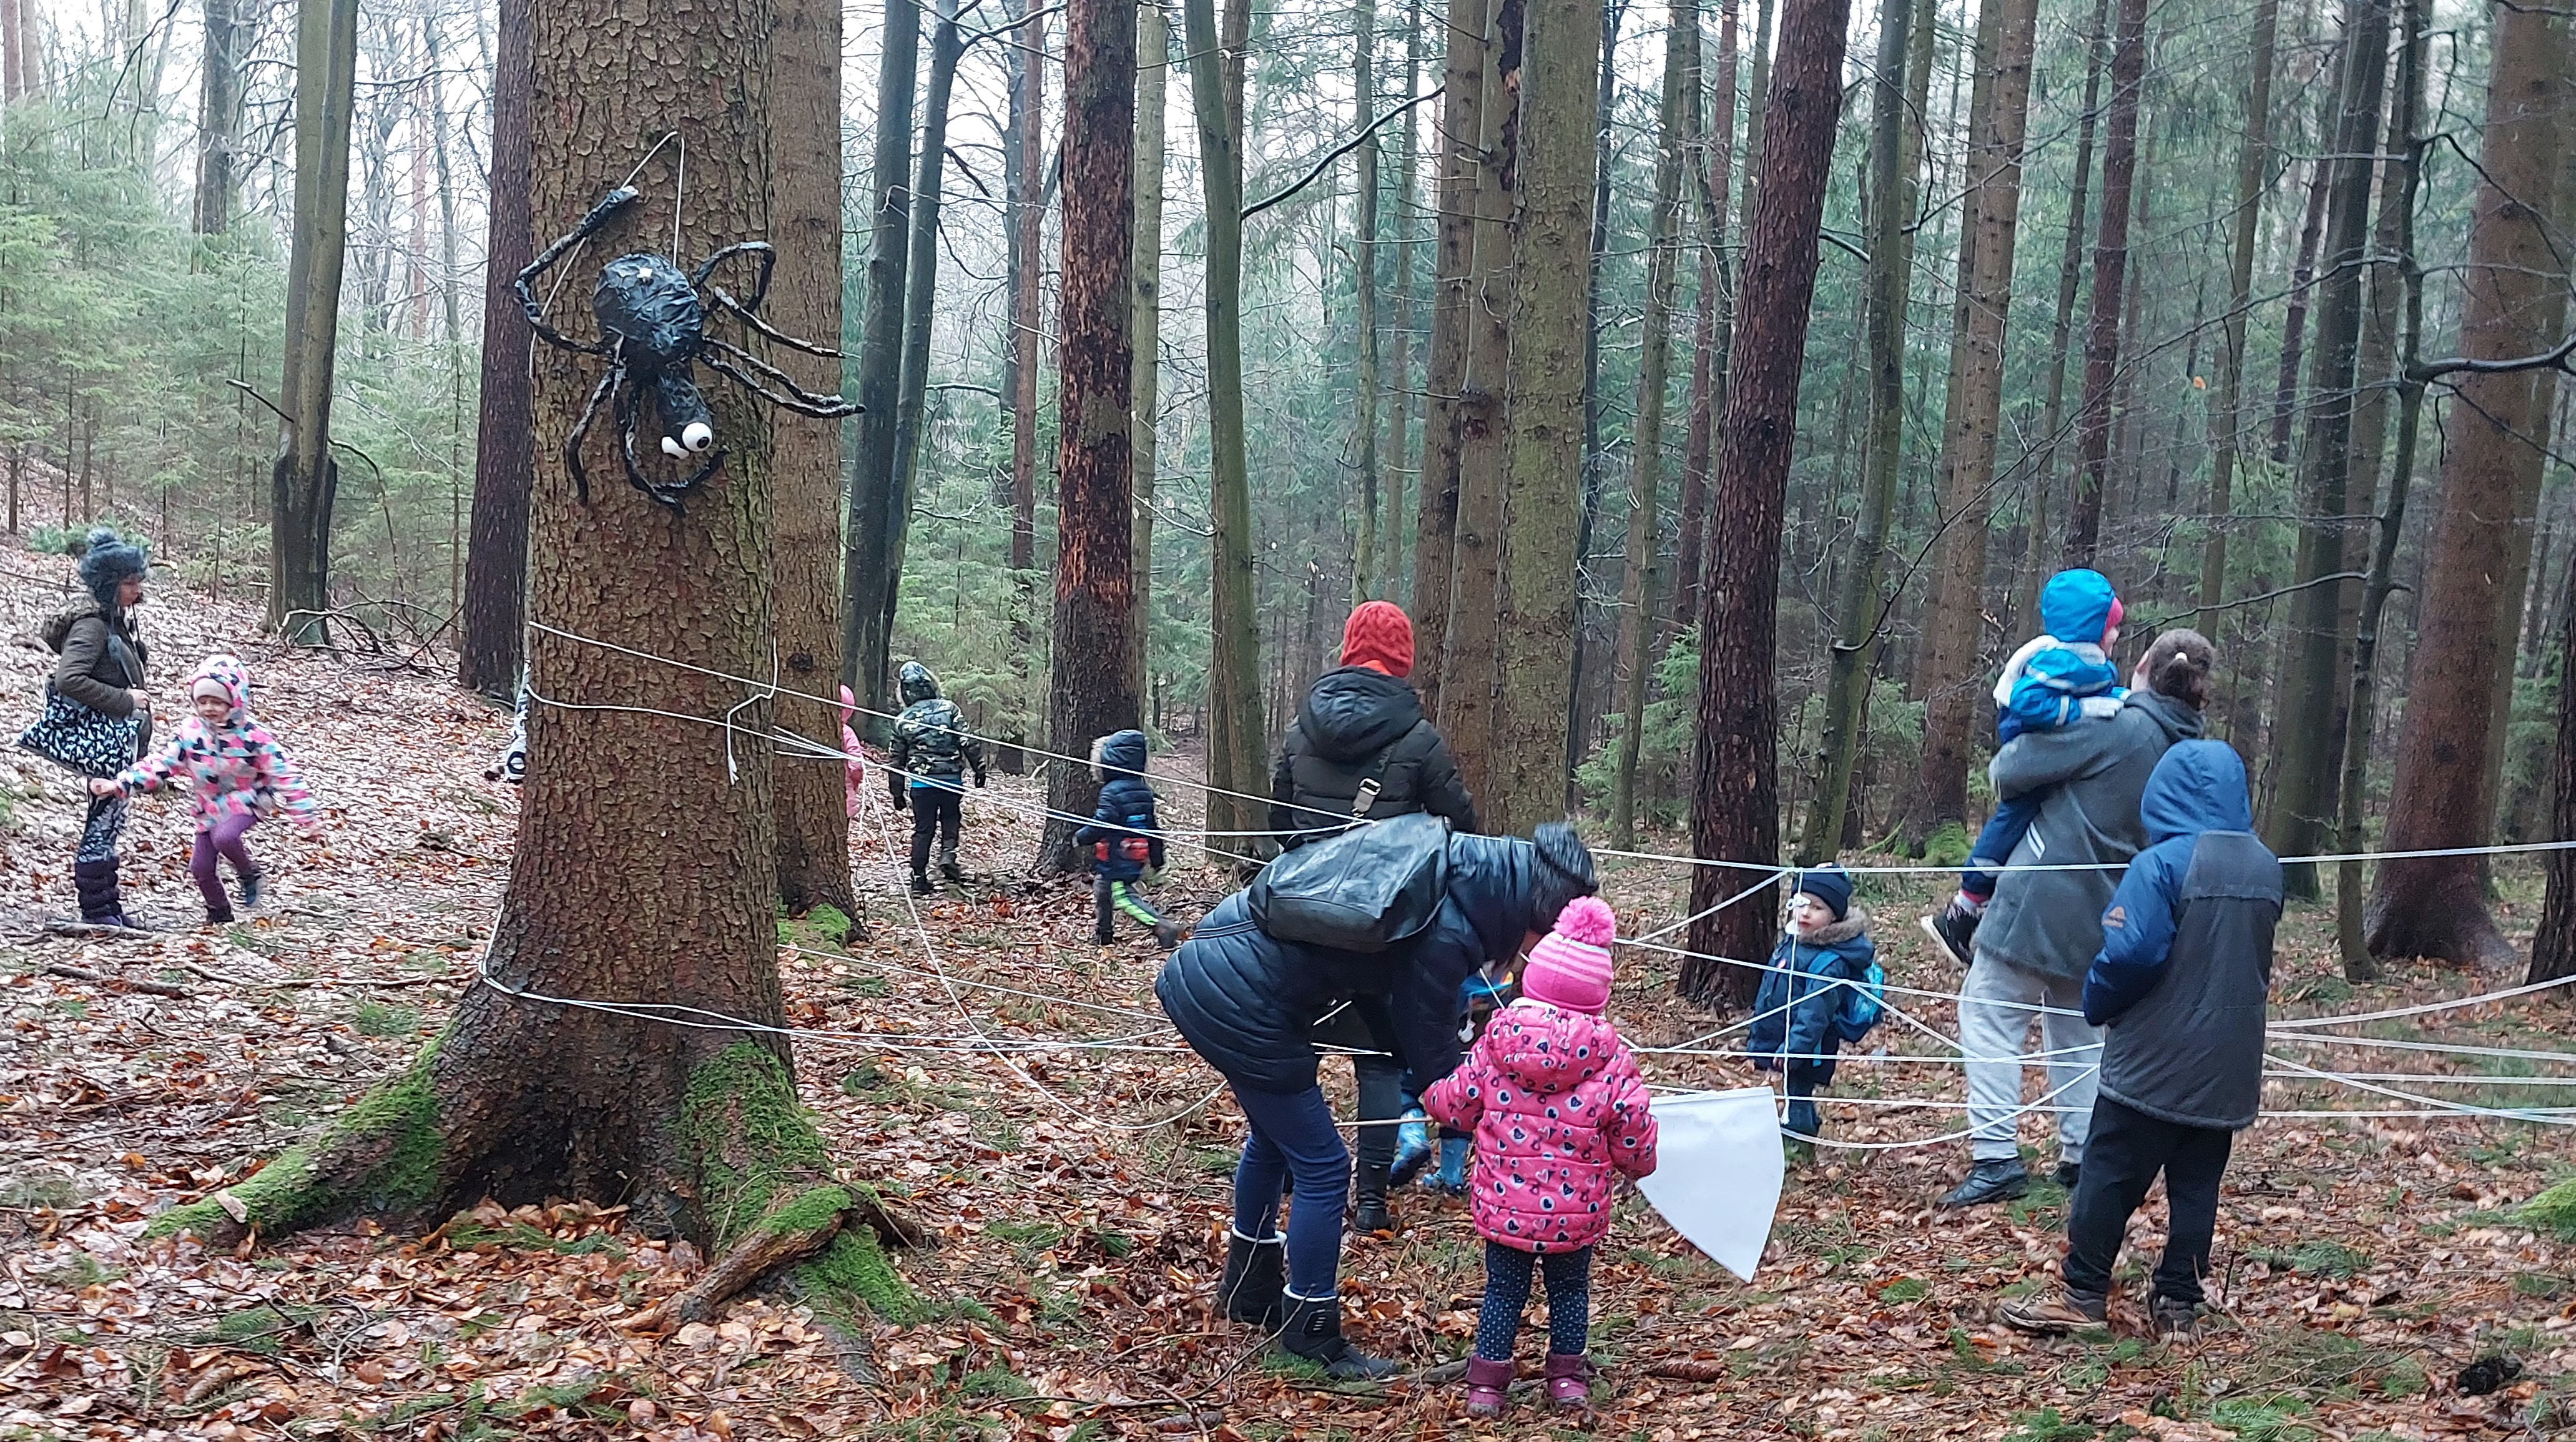 Uczestnicy wykonują zadanie - przechodzą przez pajęczynę wykonaną z linek, na drzewie zaiweszony pająk - kukiełka